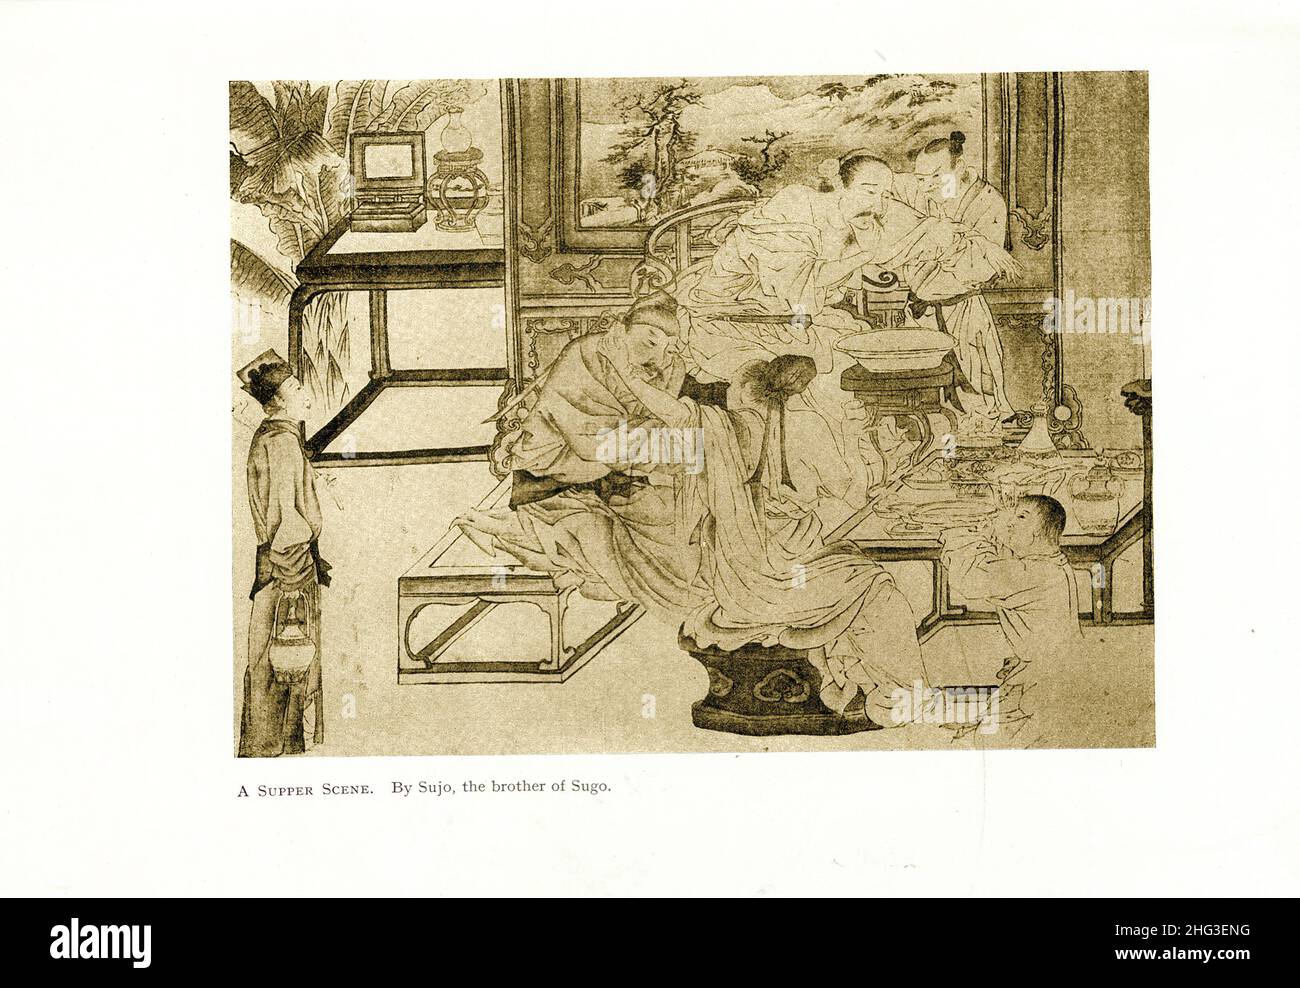 Chinesische mittelalterliche Malerei: Eine Abendmahlsszene. Von Sujo, dem Bruder von Sugo. Reproduktion der Buchdarstellung von 1912 Stockfoto